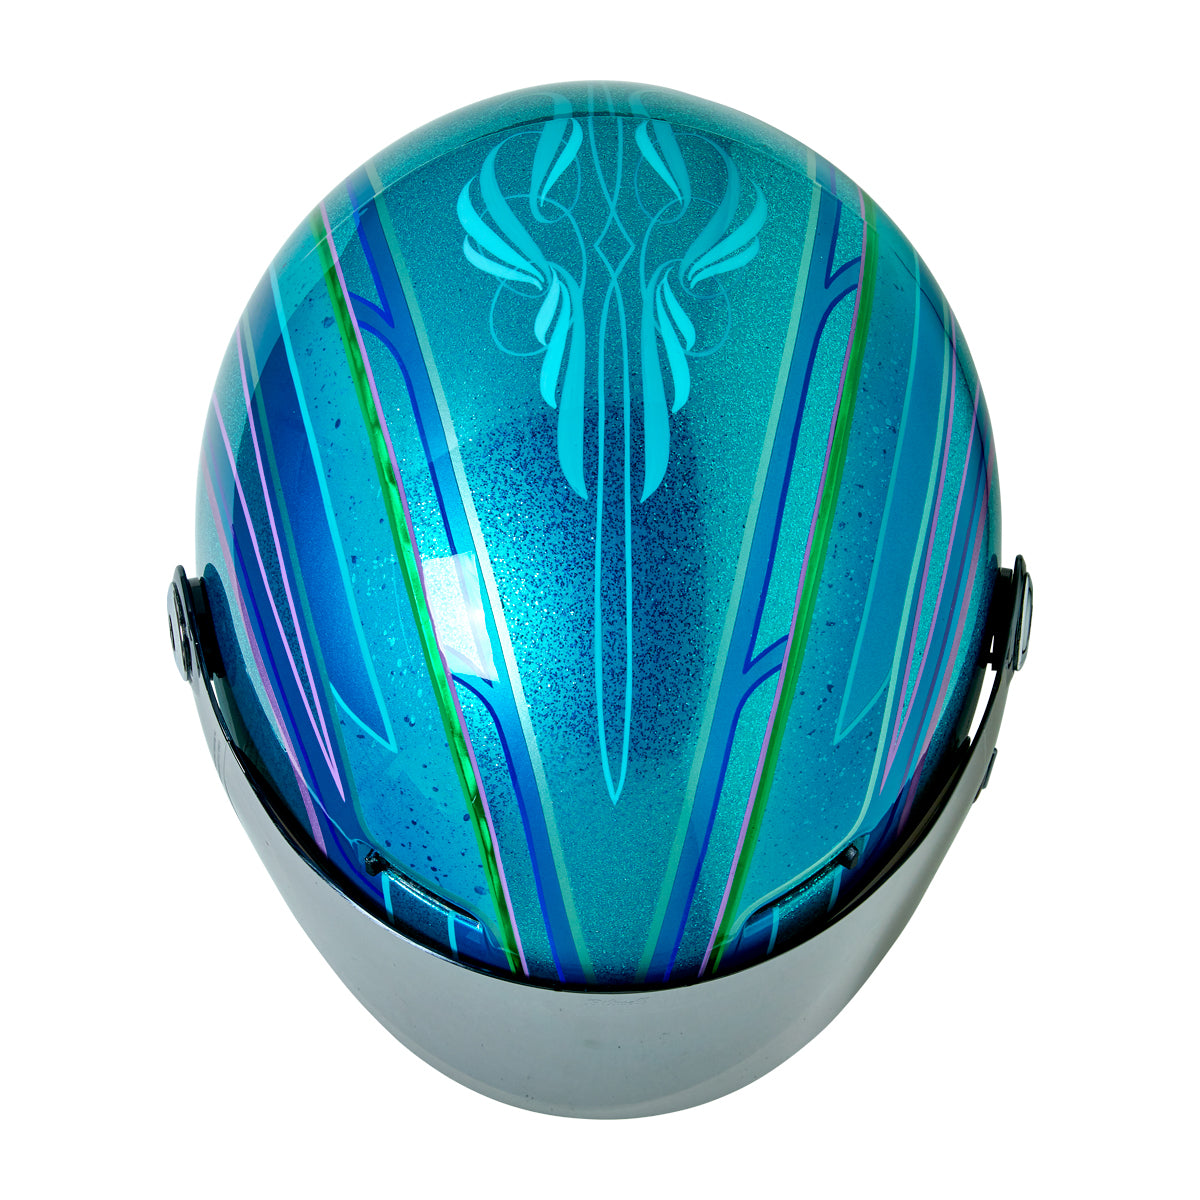 Custom Painted Gringo SV Helmet by Mike Montanez